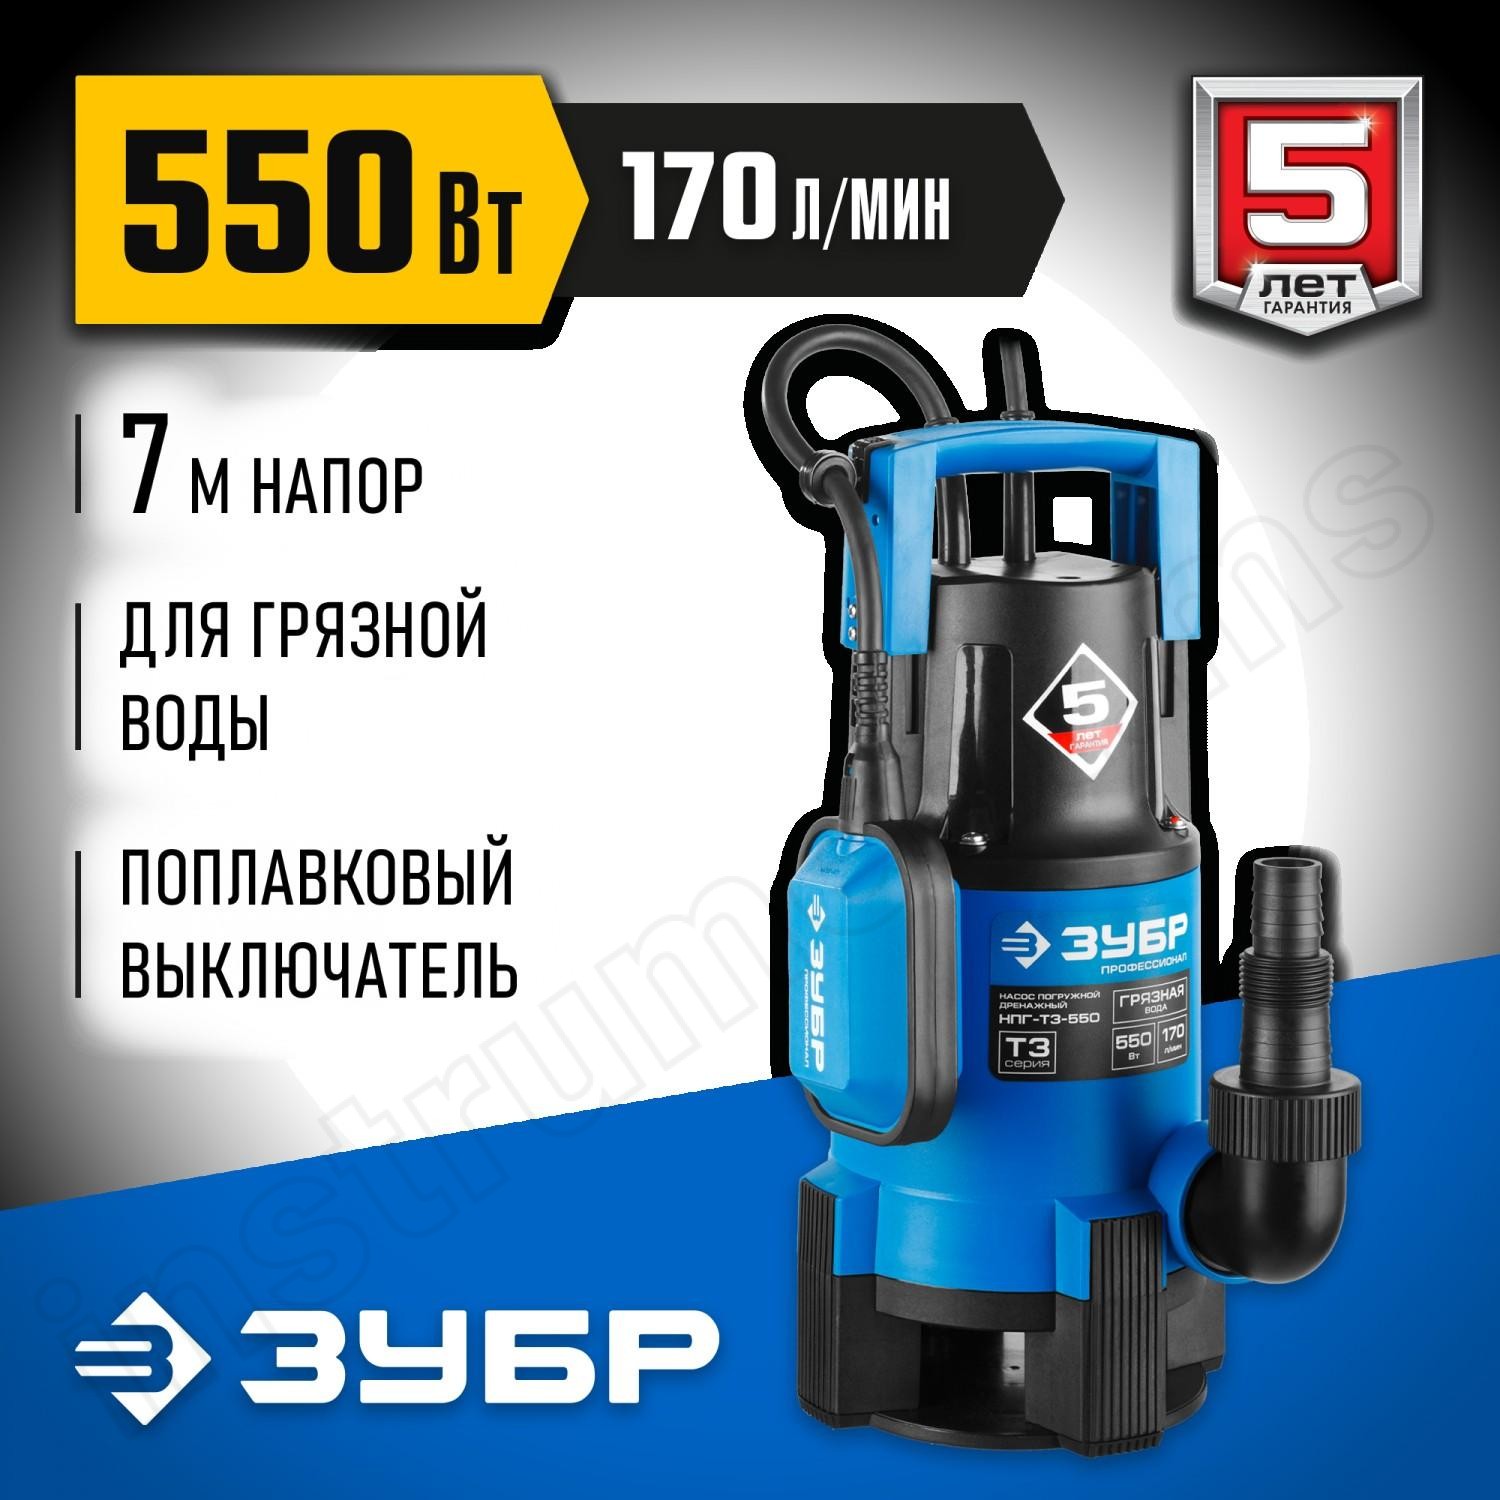 ЗУБР 550 Вт, 170 л/мин, насос погружной дренажный для грязной воды НПГ-Т3-550 Профессионал - фото 1